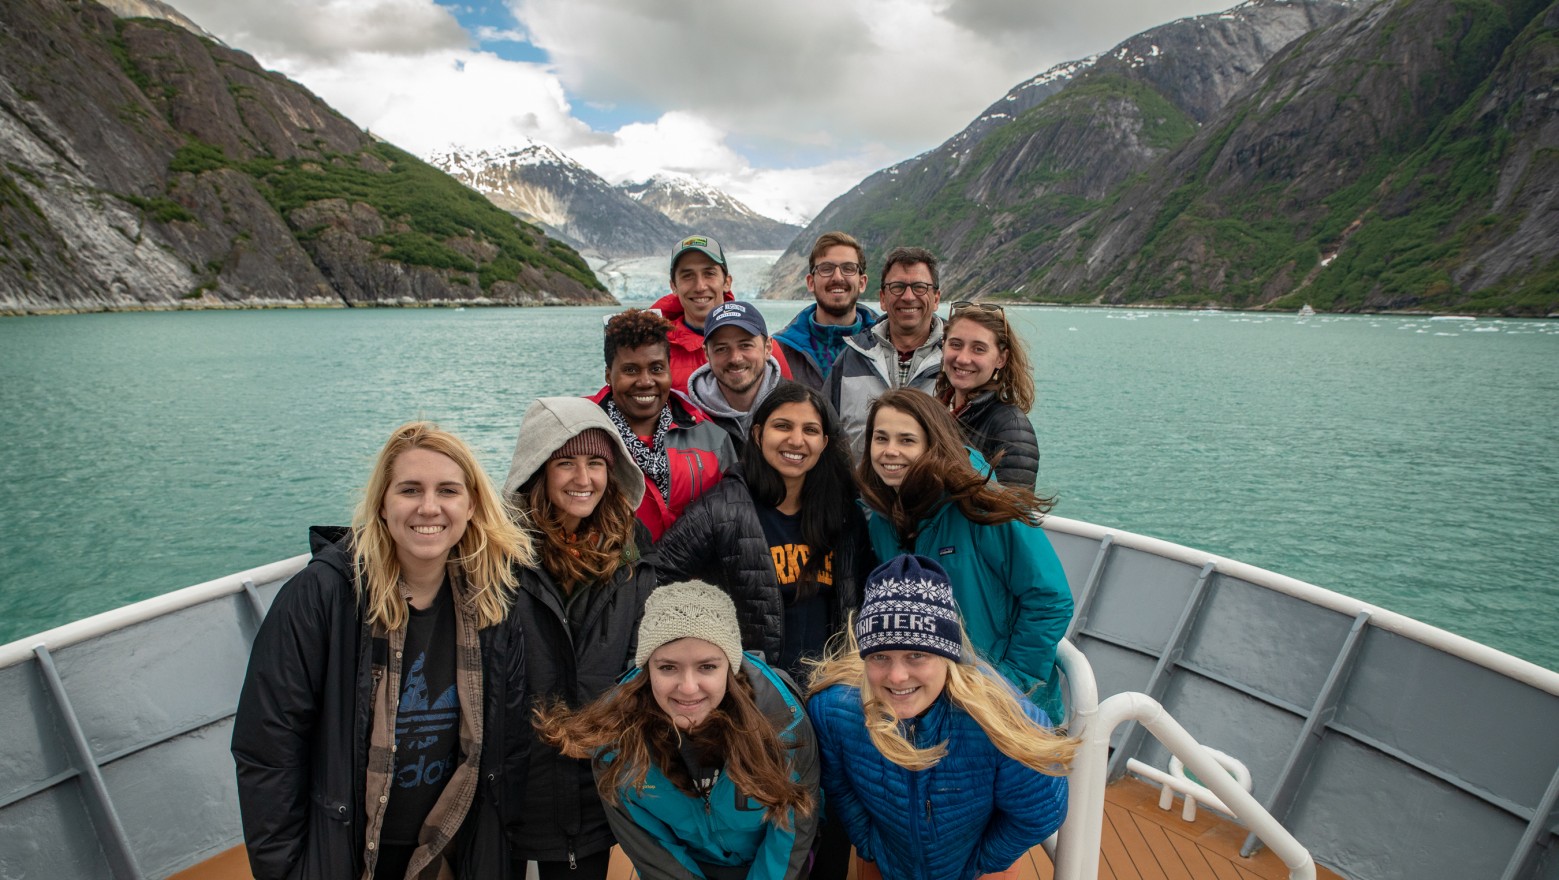 Storyfest winners take in astonishing Alaska